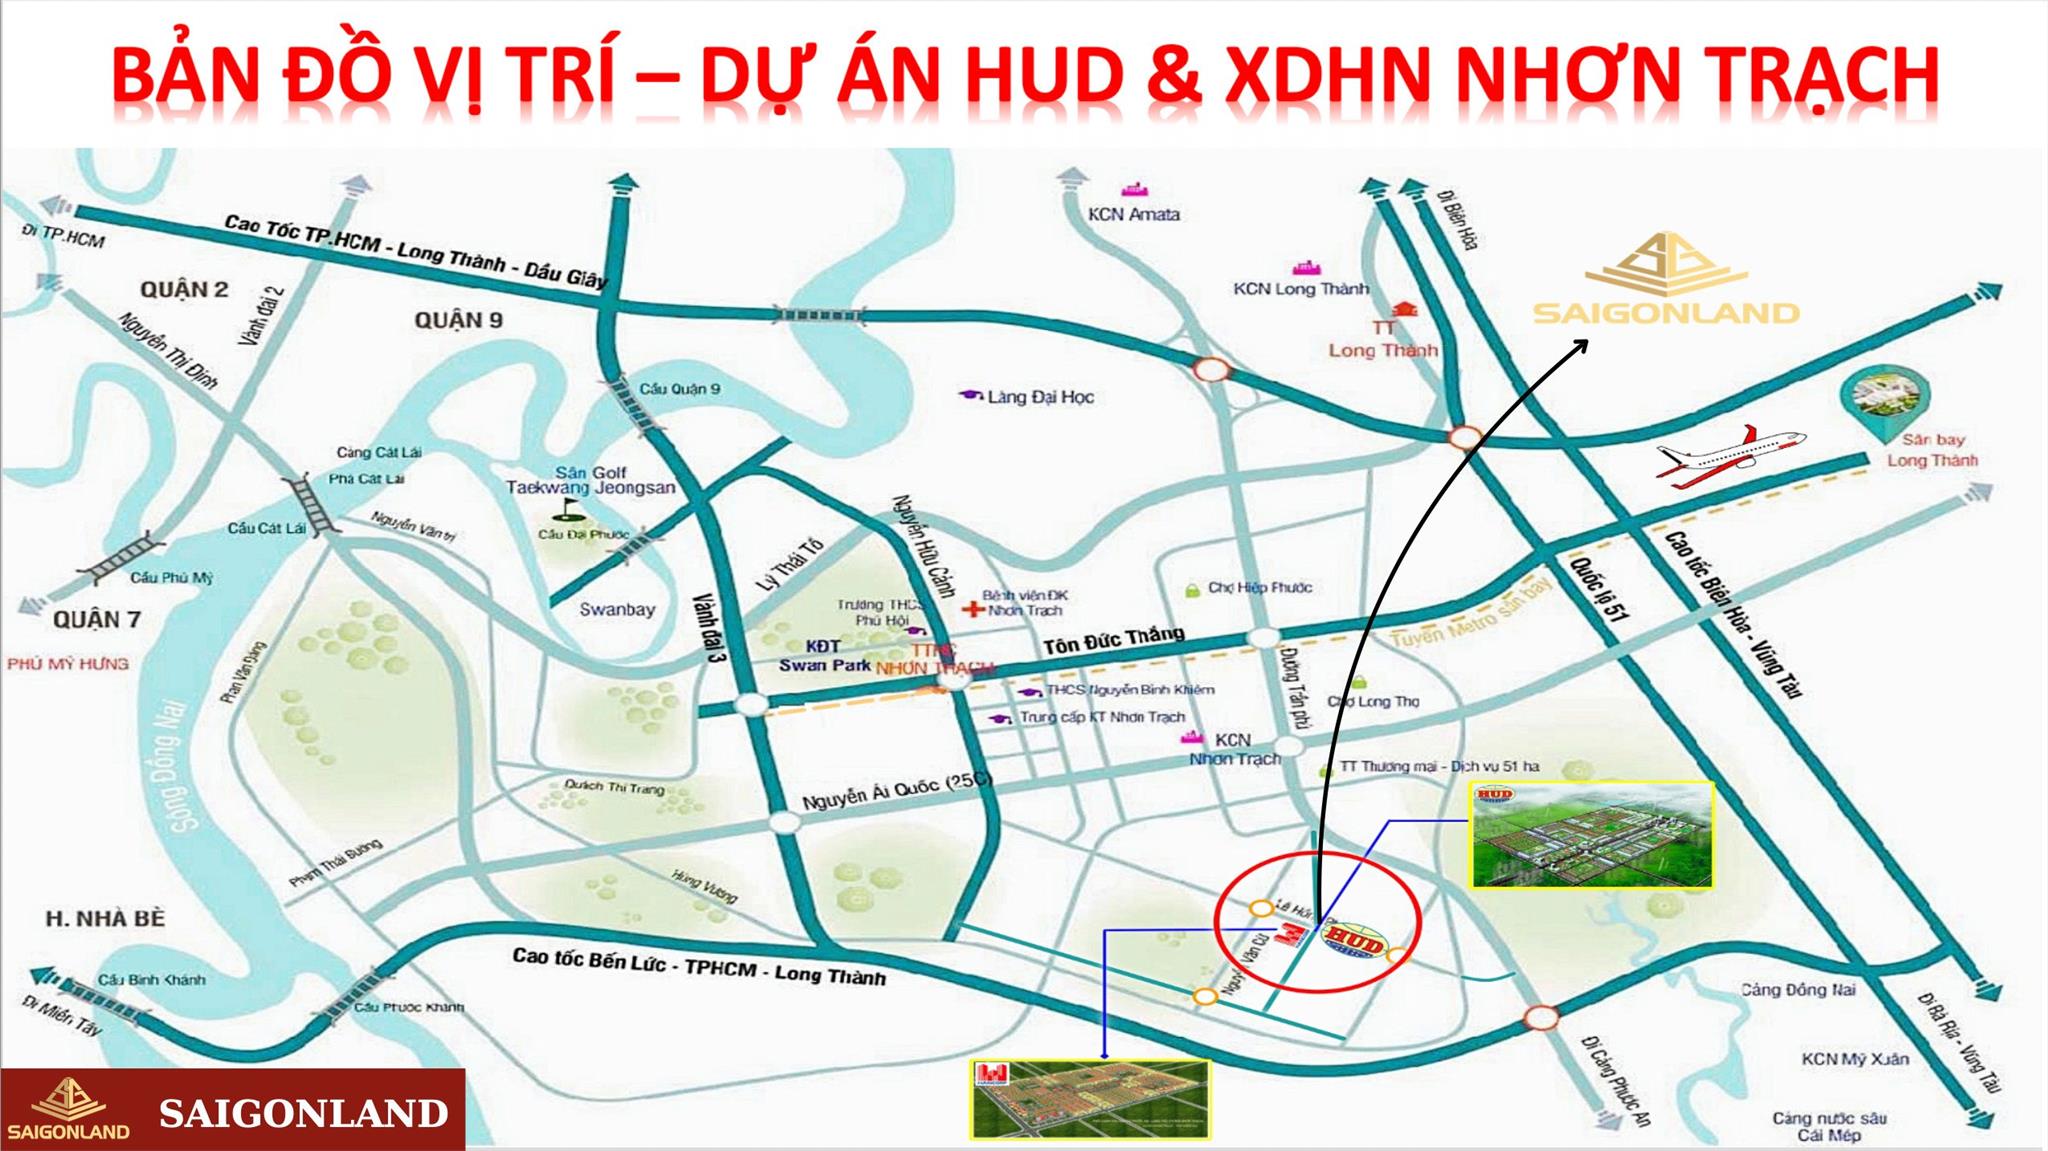 Cty Saigonland Nhơn Trạch - Mua bán đất Nhơn Trạch - Dự án Hud Nhơn Trạch Đồng Nai. - Ảnh 4